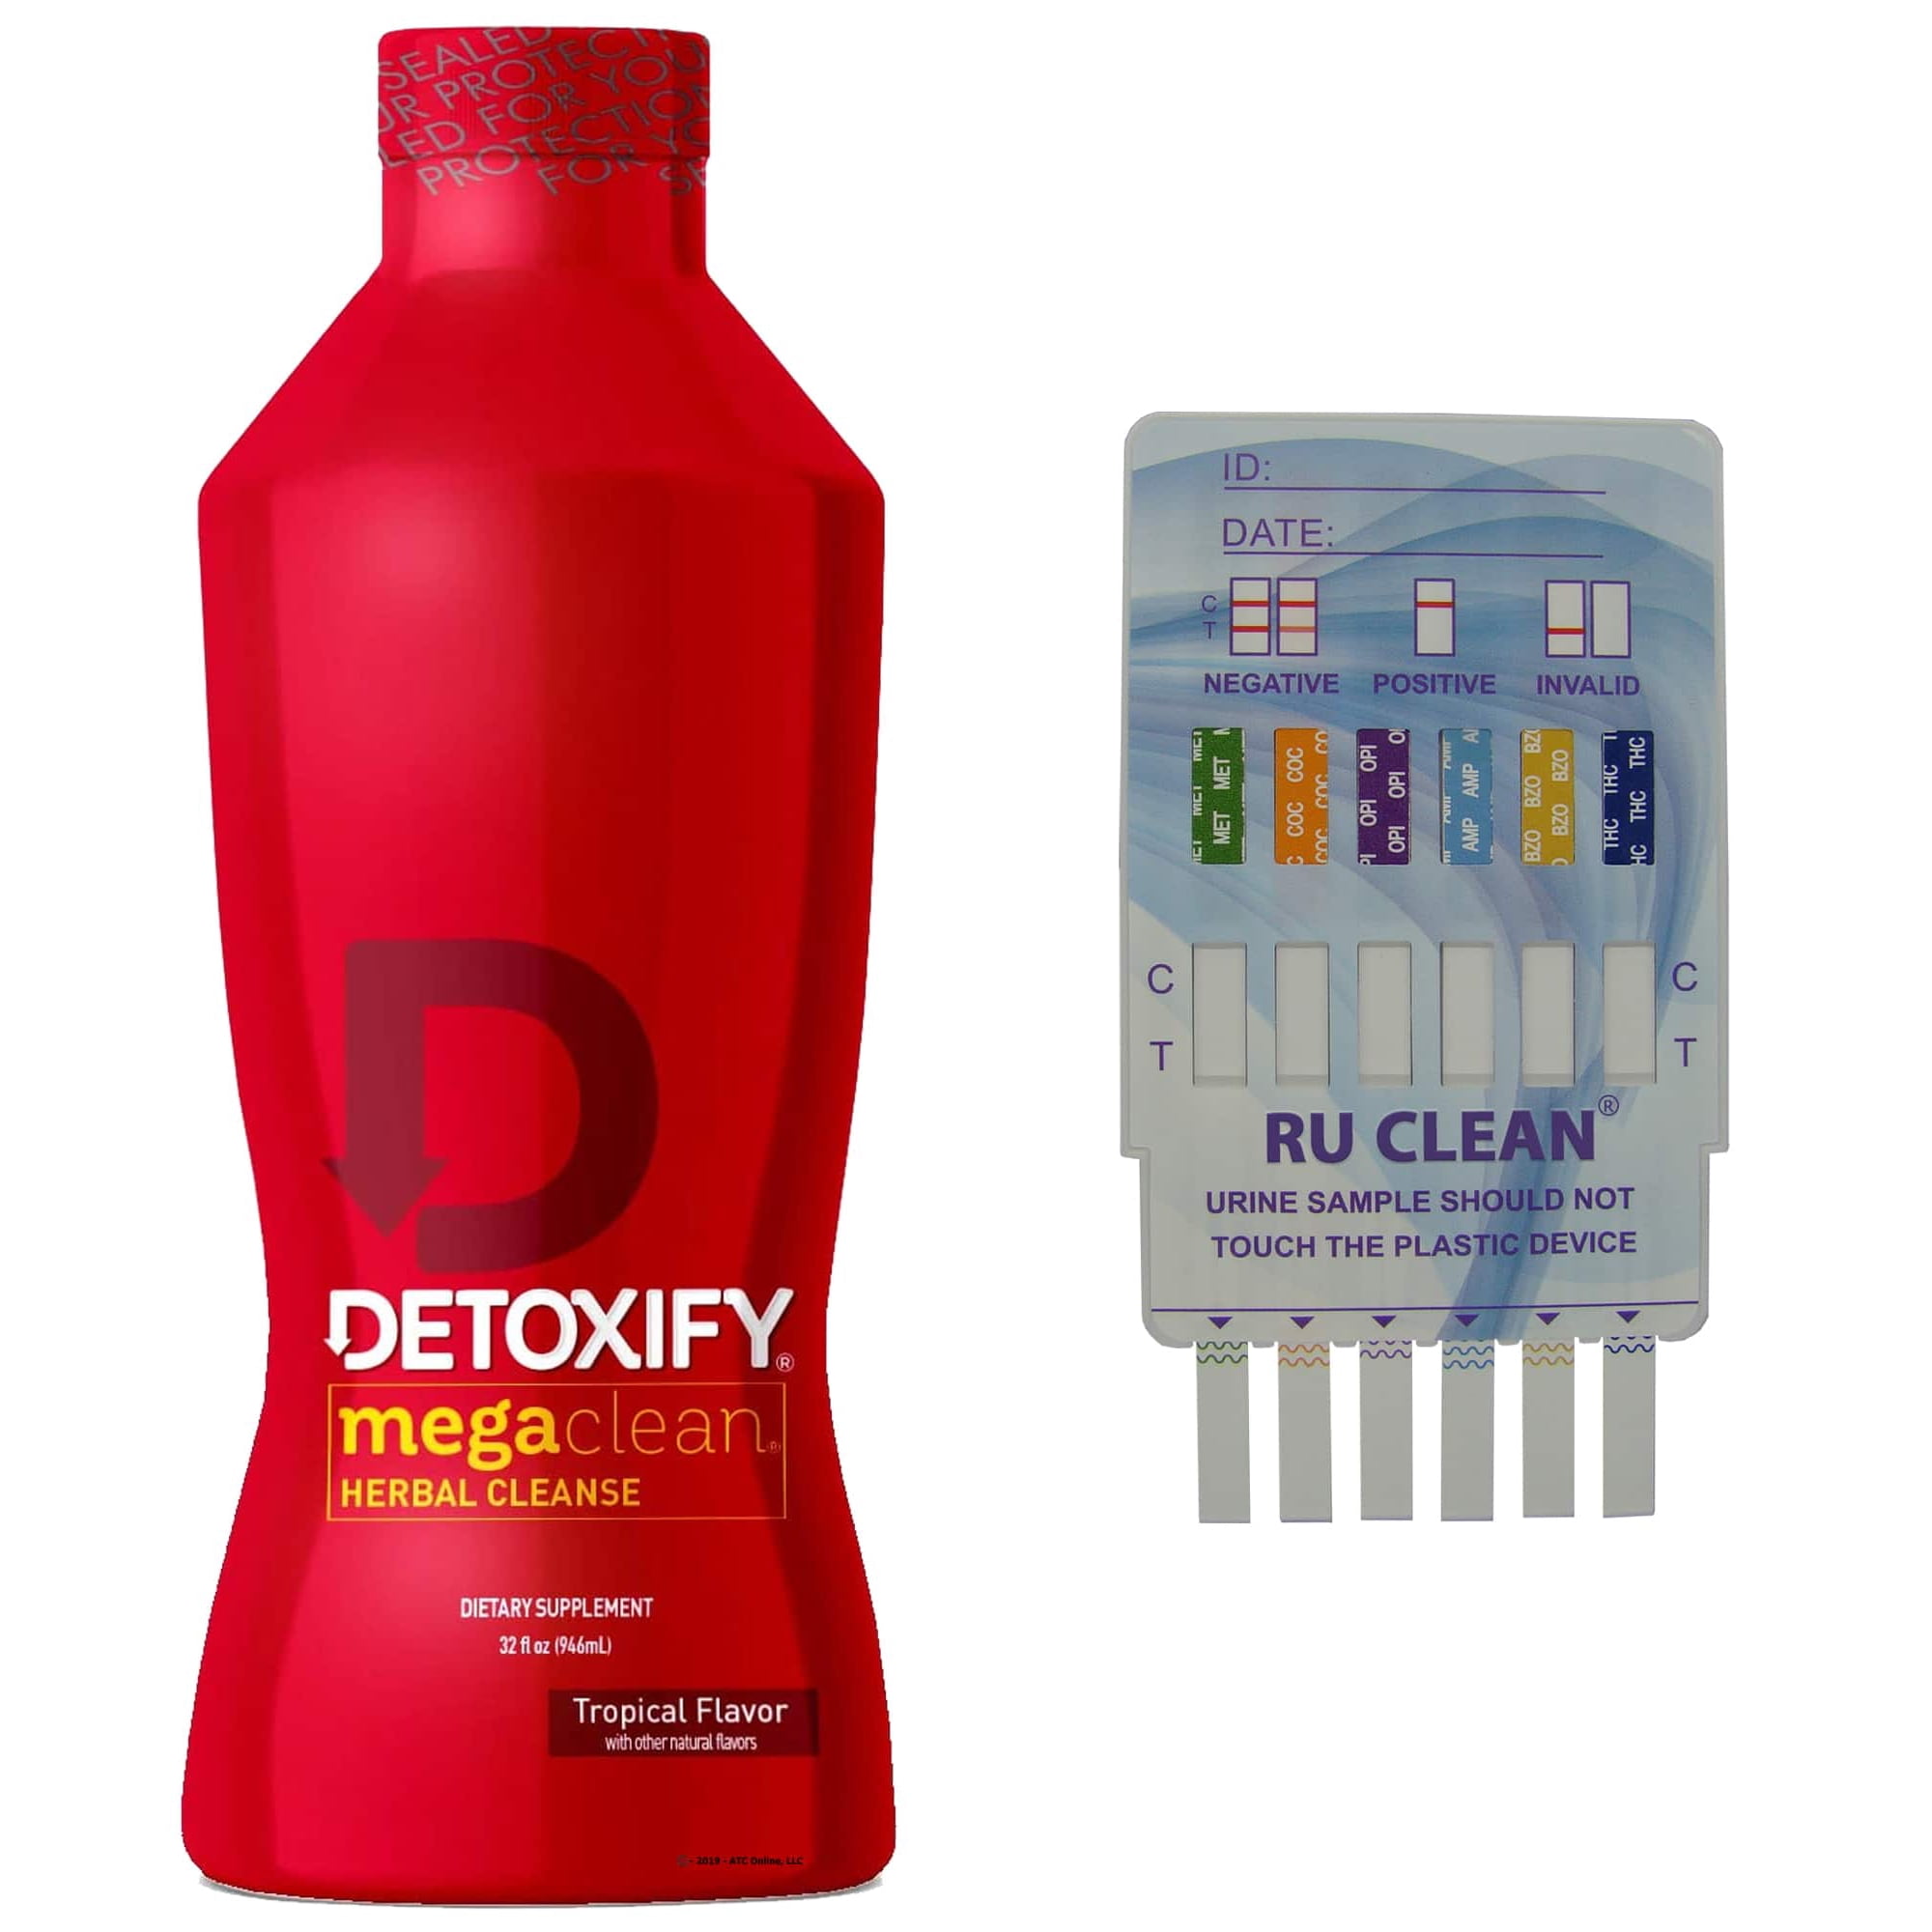 Detoxify Detox Ready Clean, Orange, 16 Oz